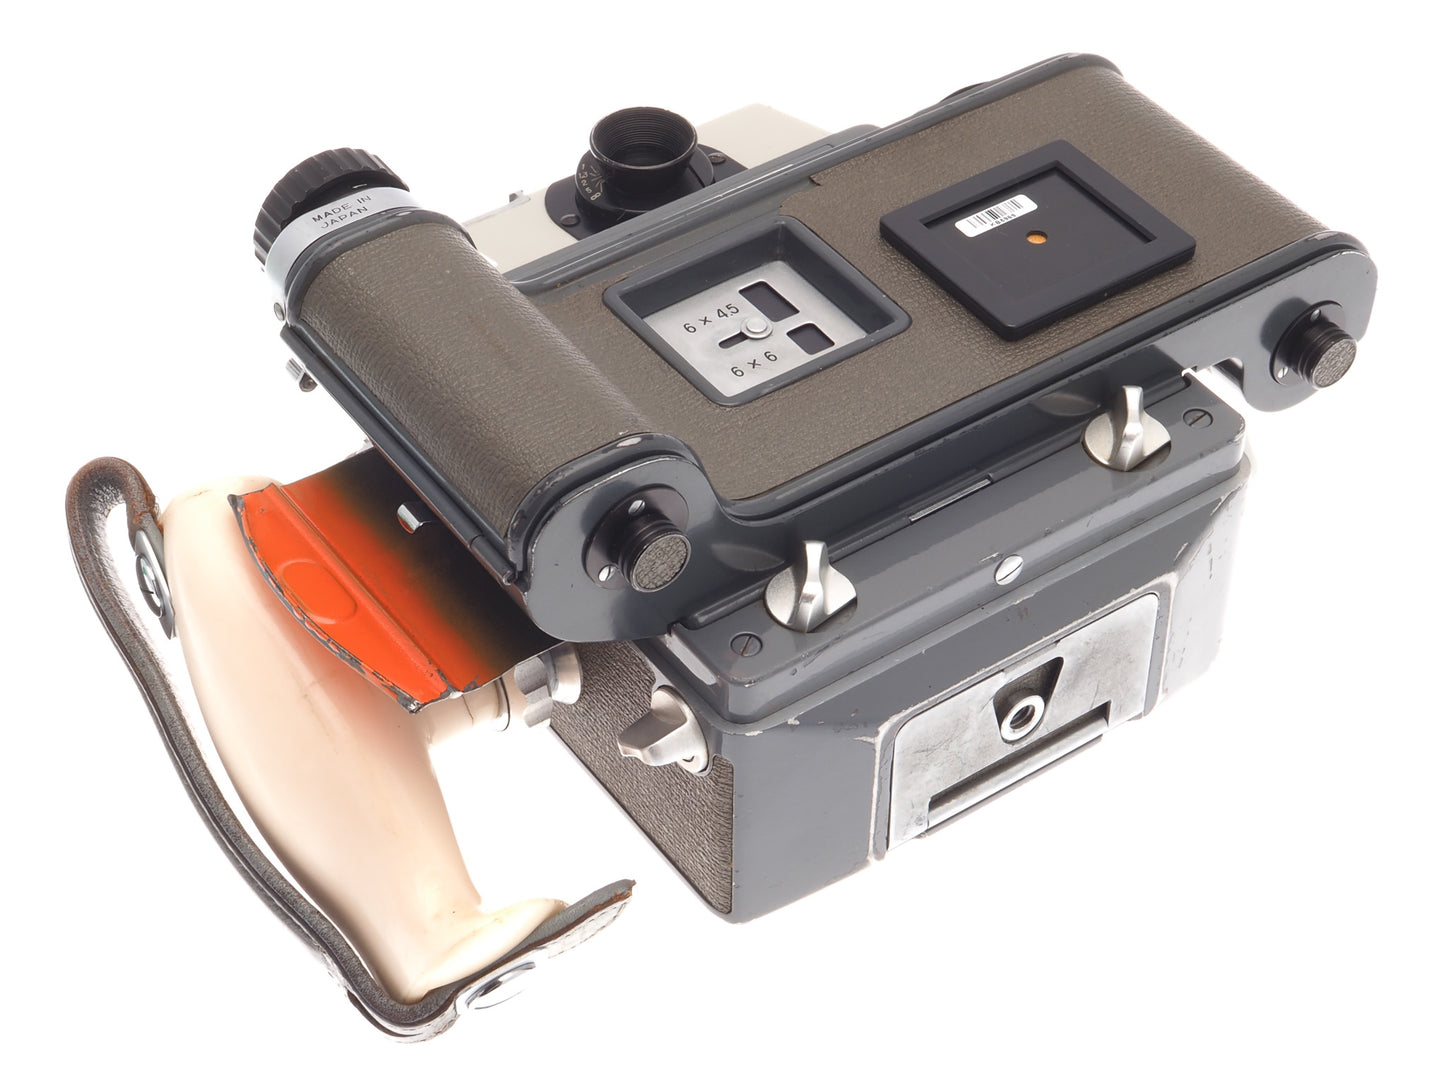 Mamiya Press + 6x9 Roll Film Adapter + 90mm f3.5 Sekor + Left Hand Grip for Press Cameras